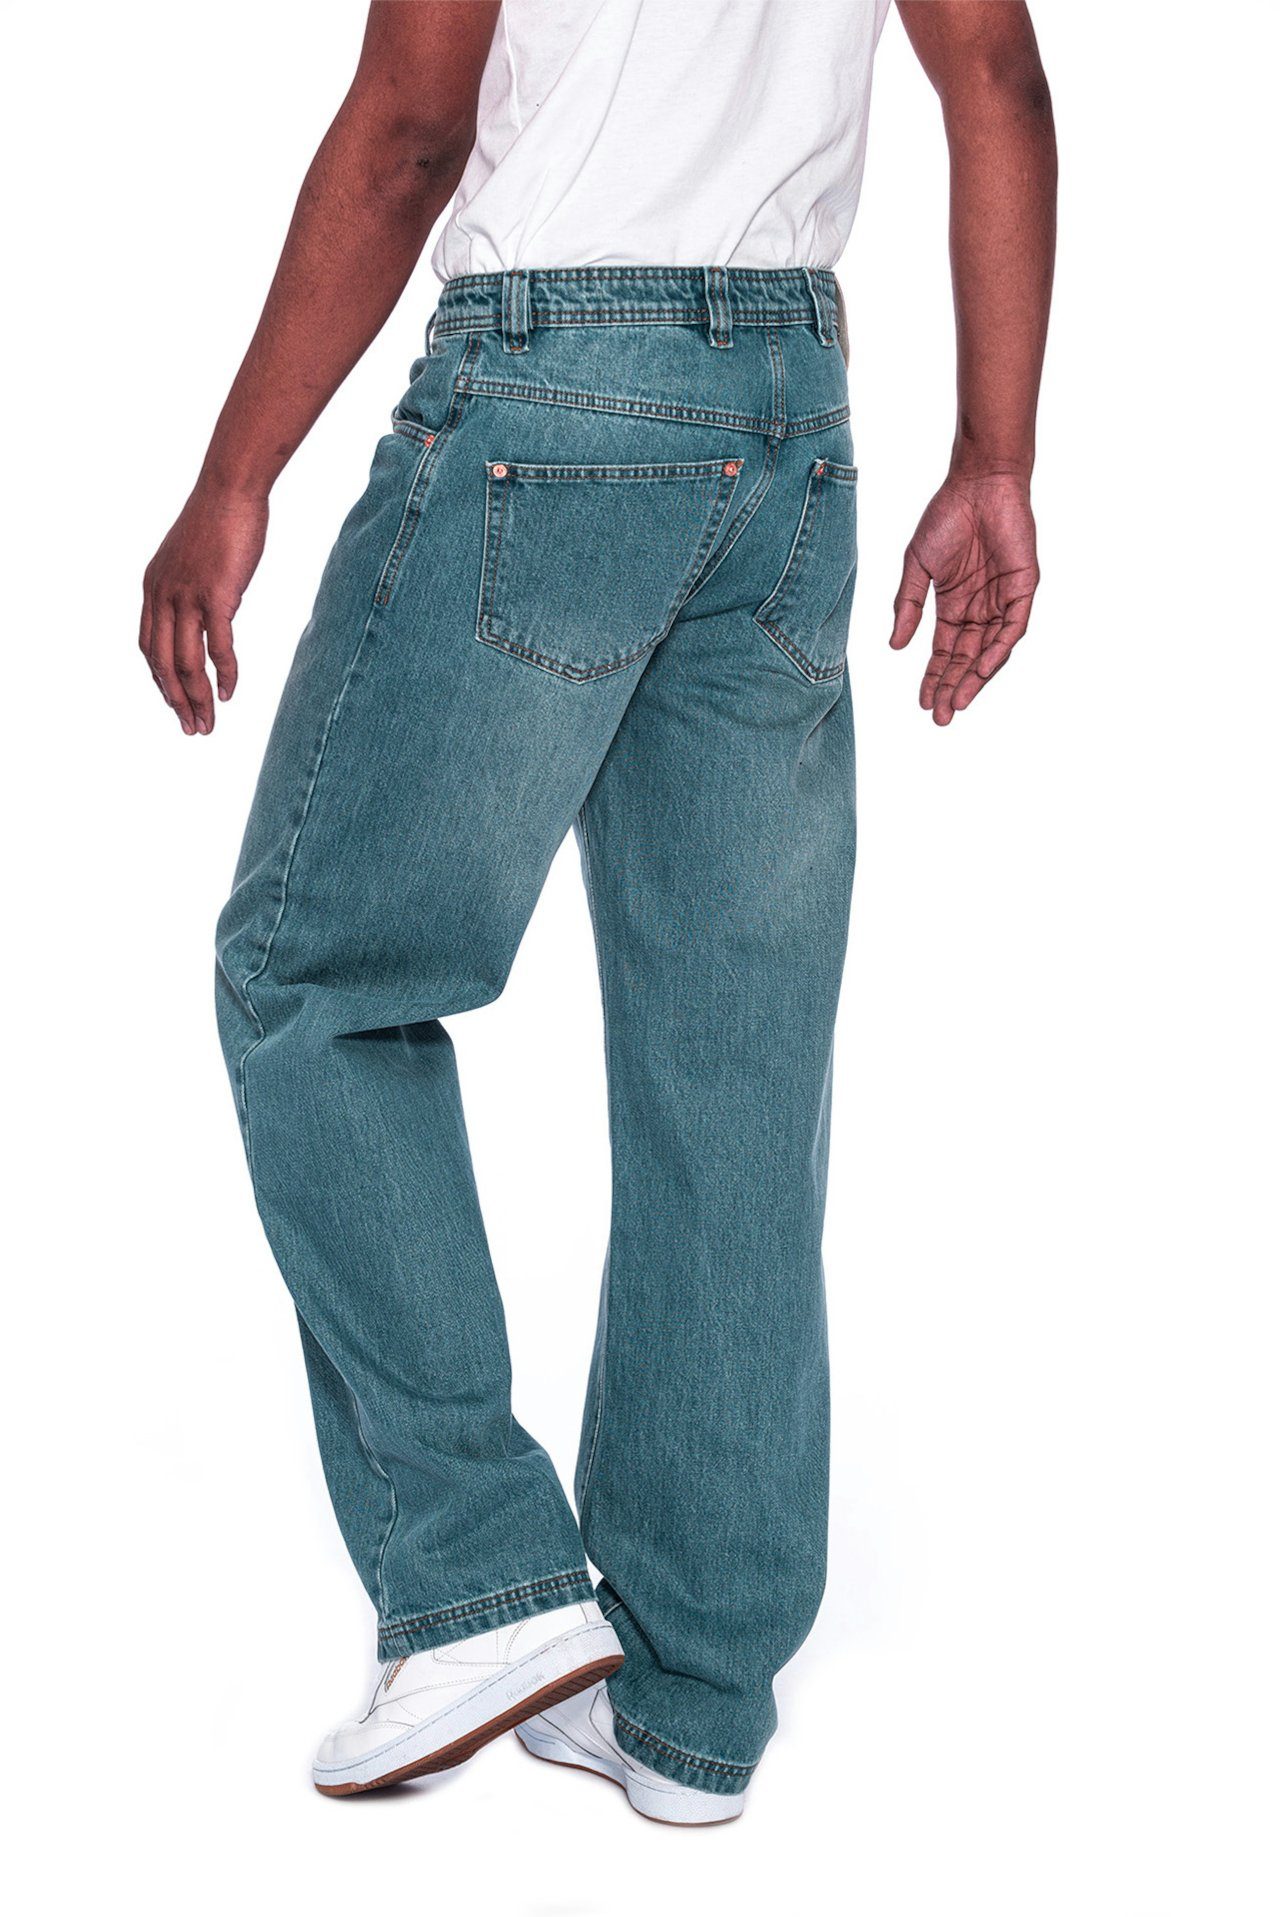 PICALDI Jeans Weite Jeans Zicco lässiger 474 Gerader Enemy Baggy Leg, Schnitt Fit, Straight